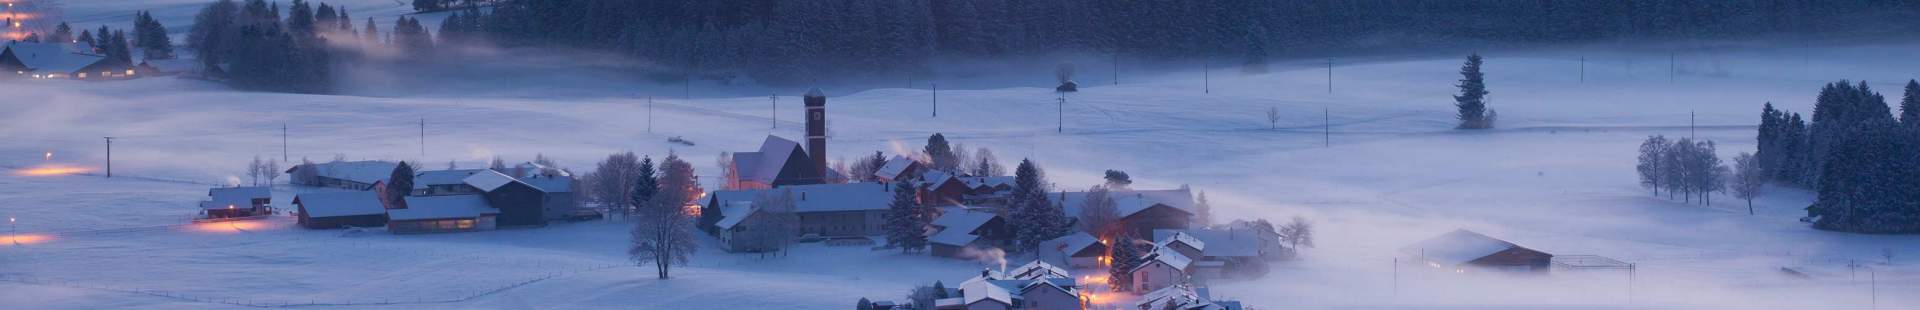 Ein Dorf im Schnee